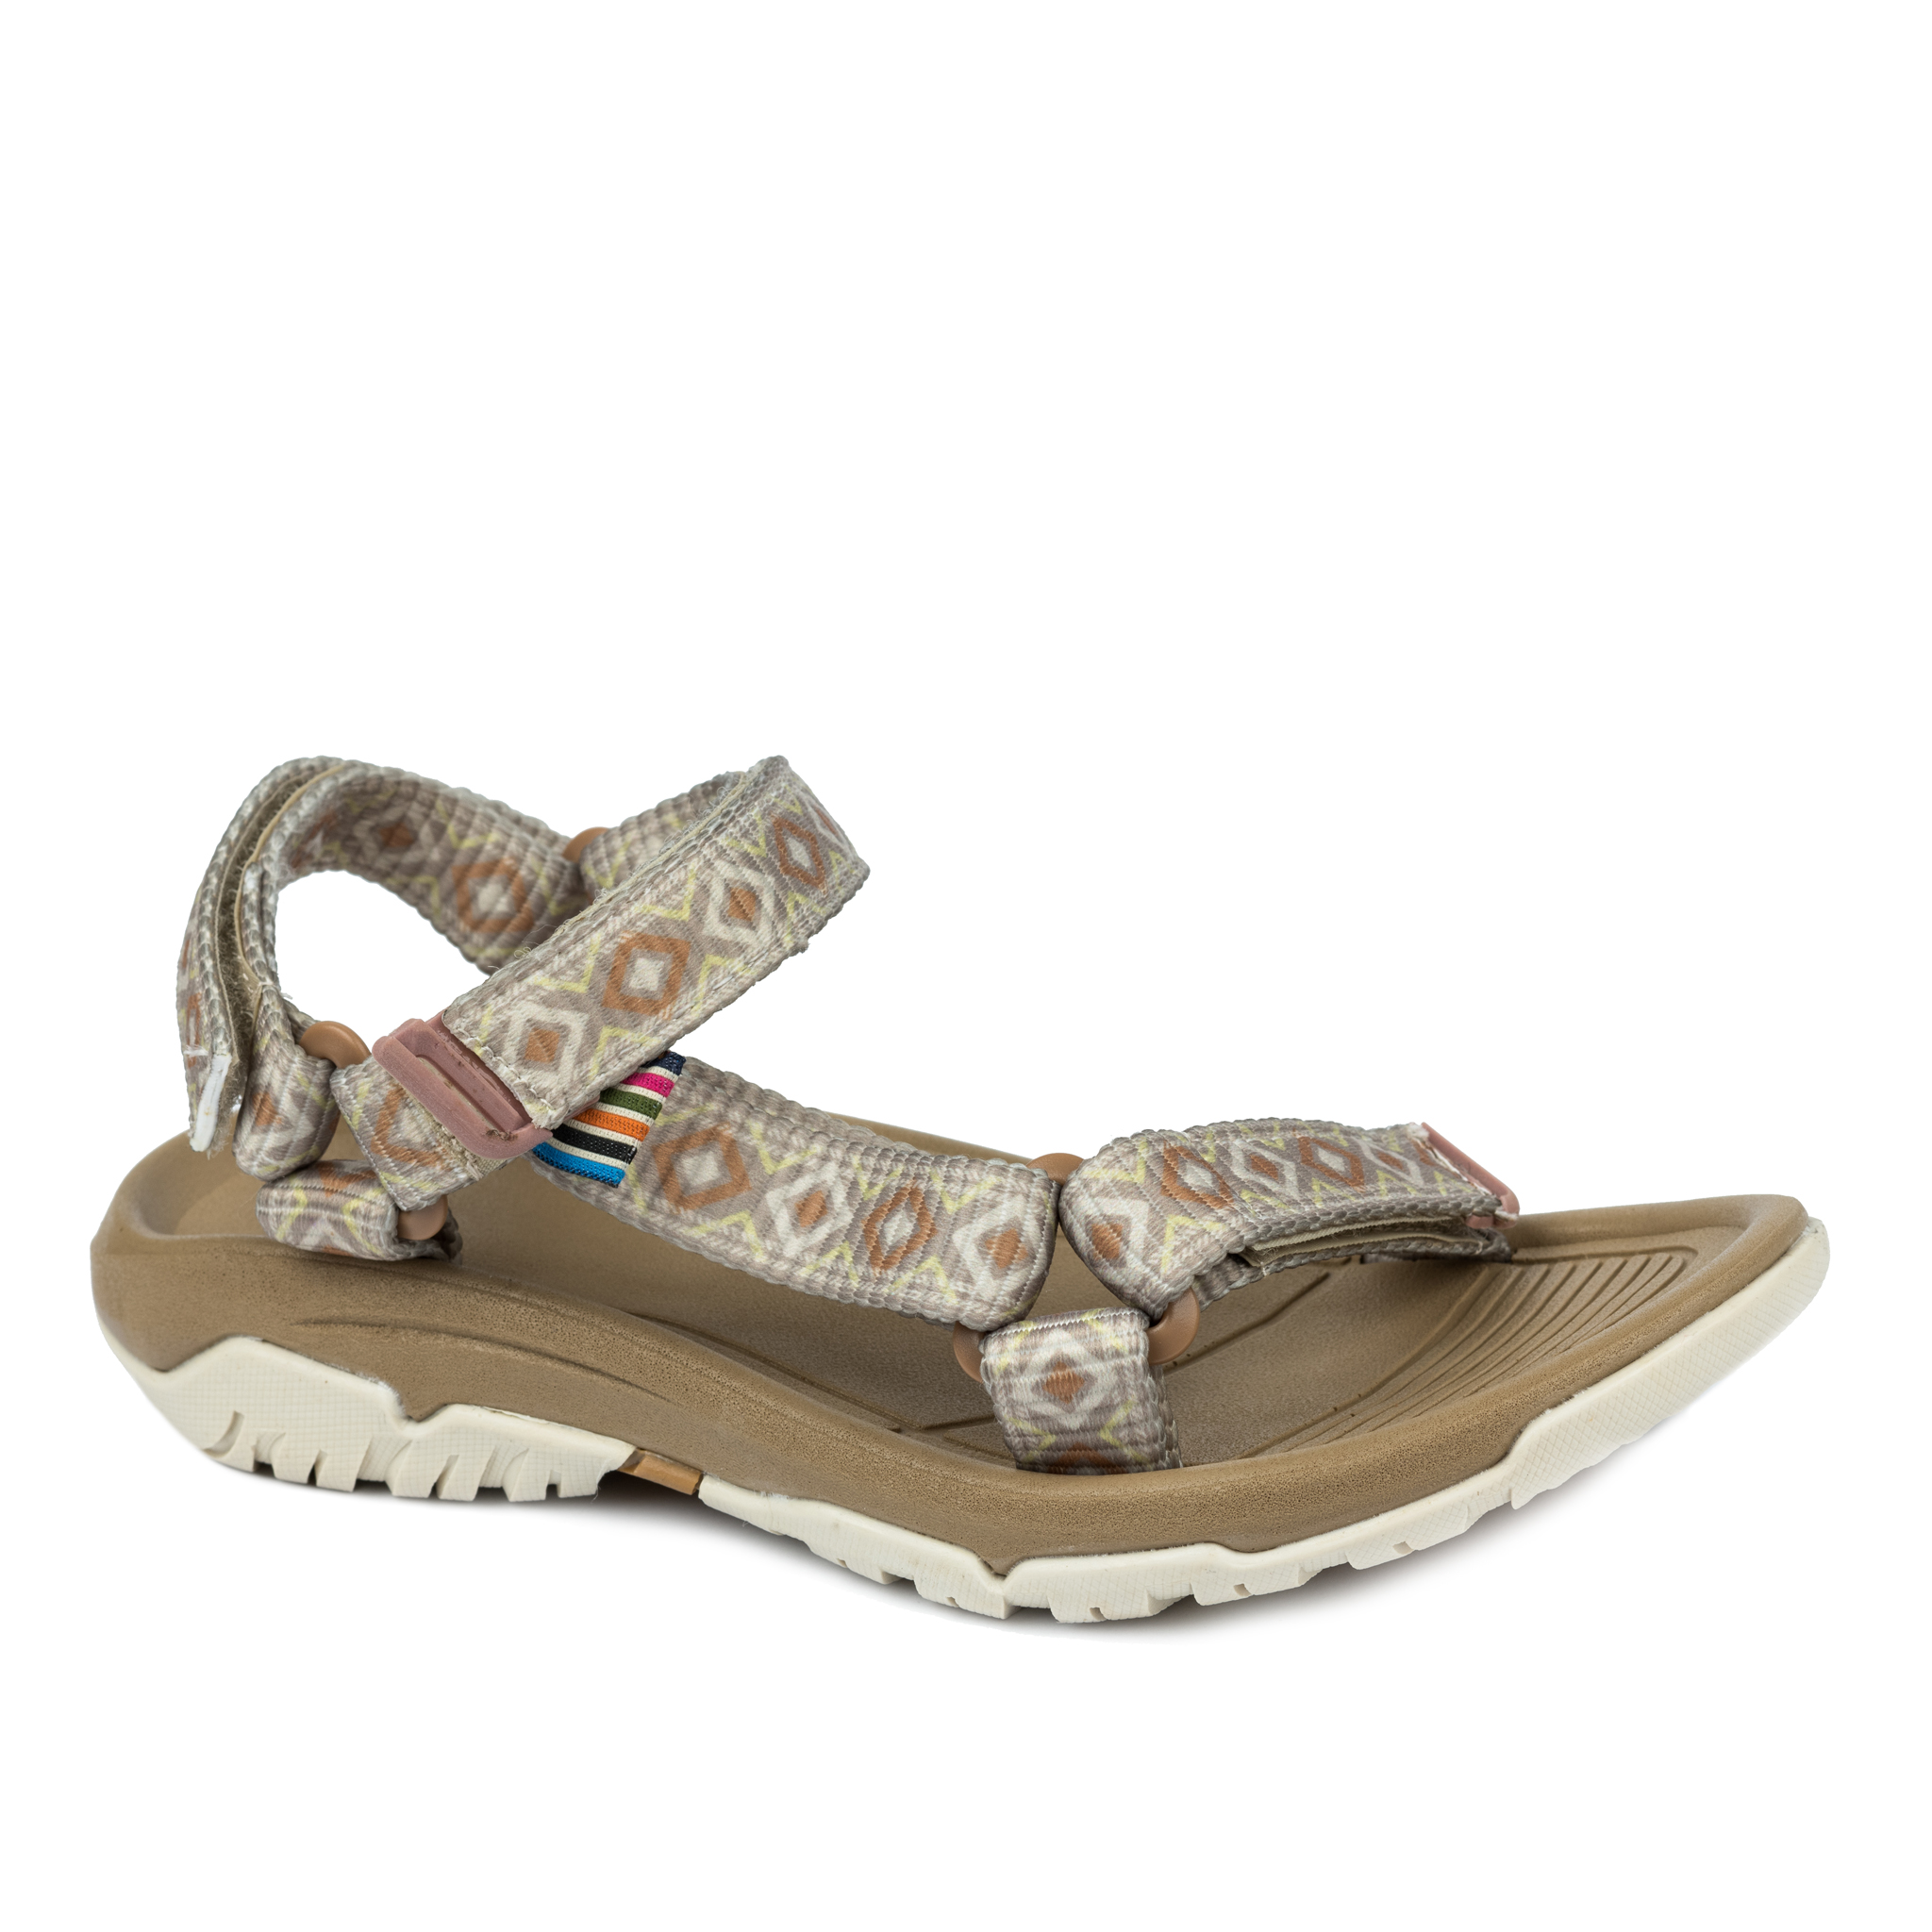 Women sandals A776 - BEIGE